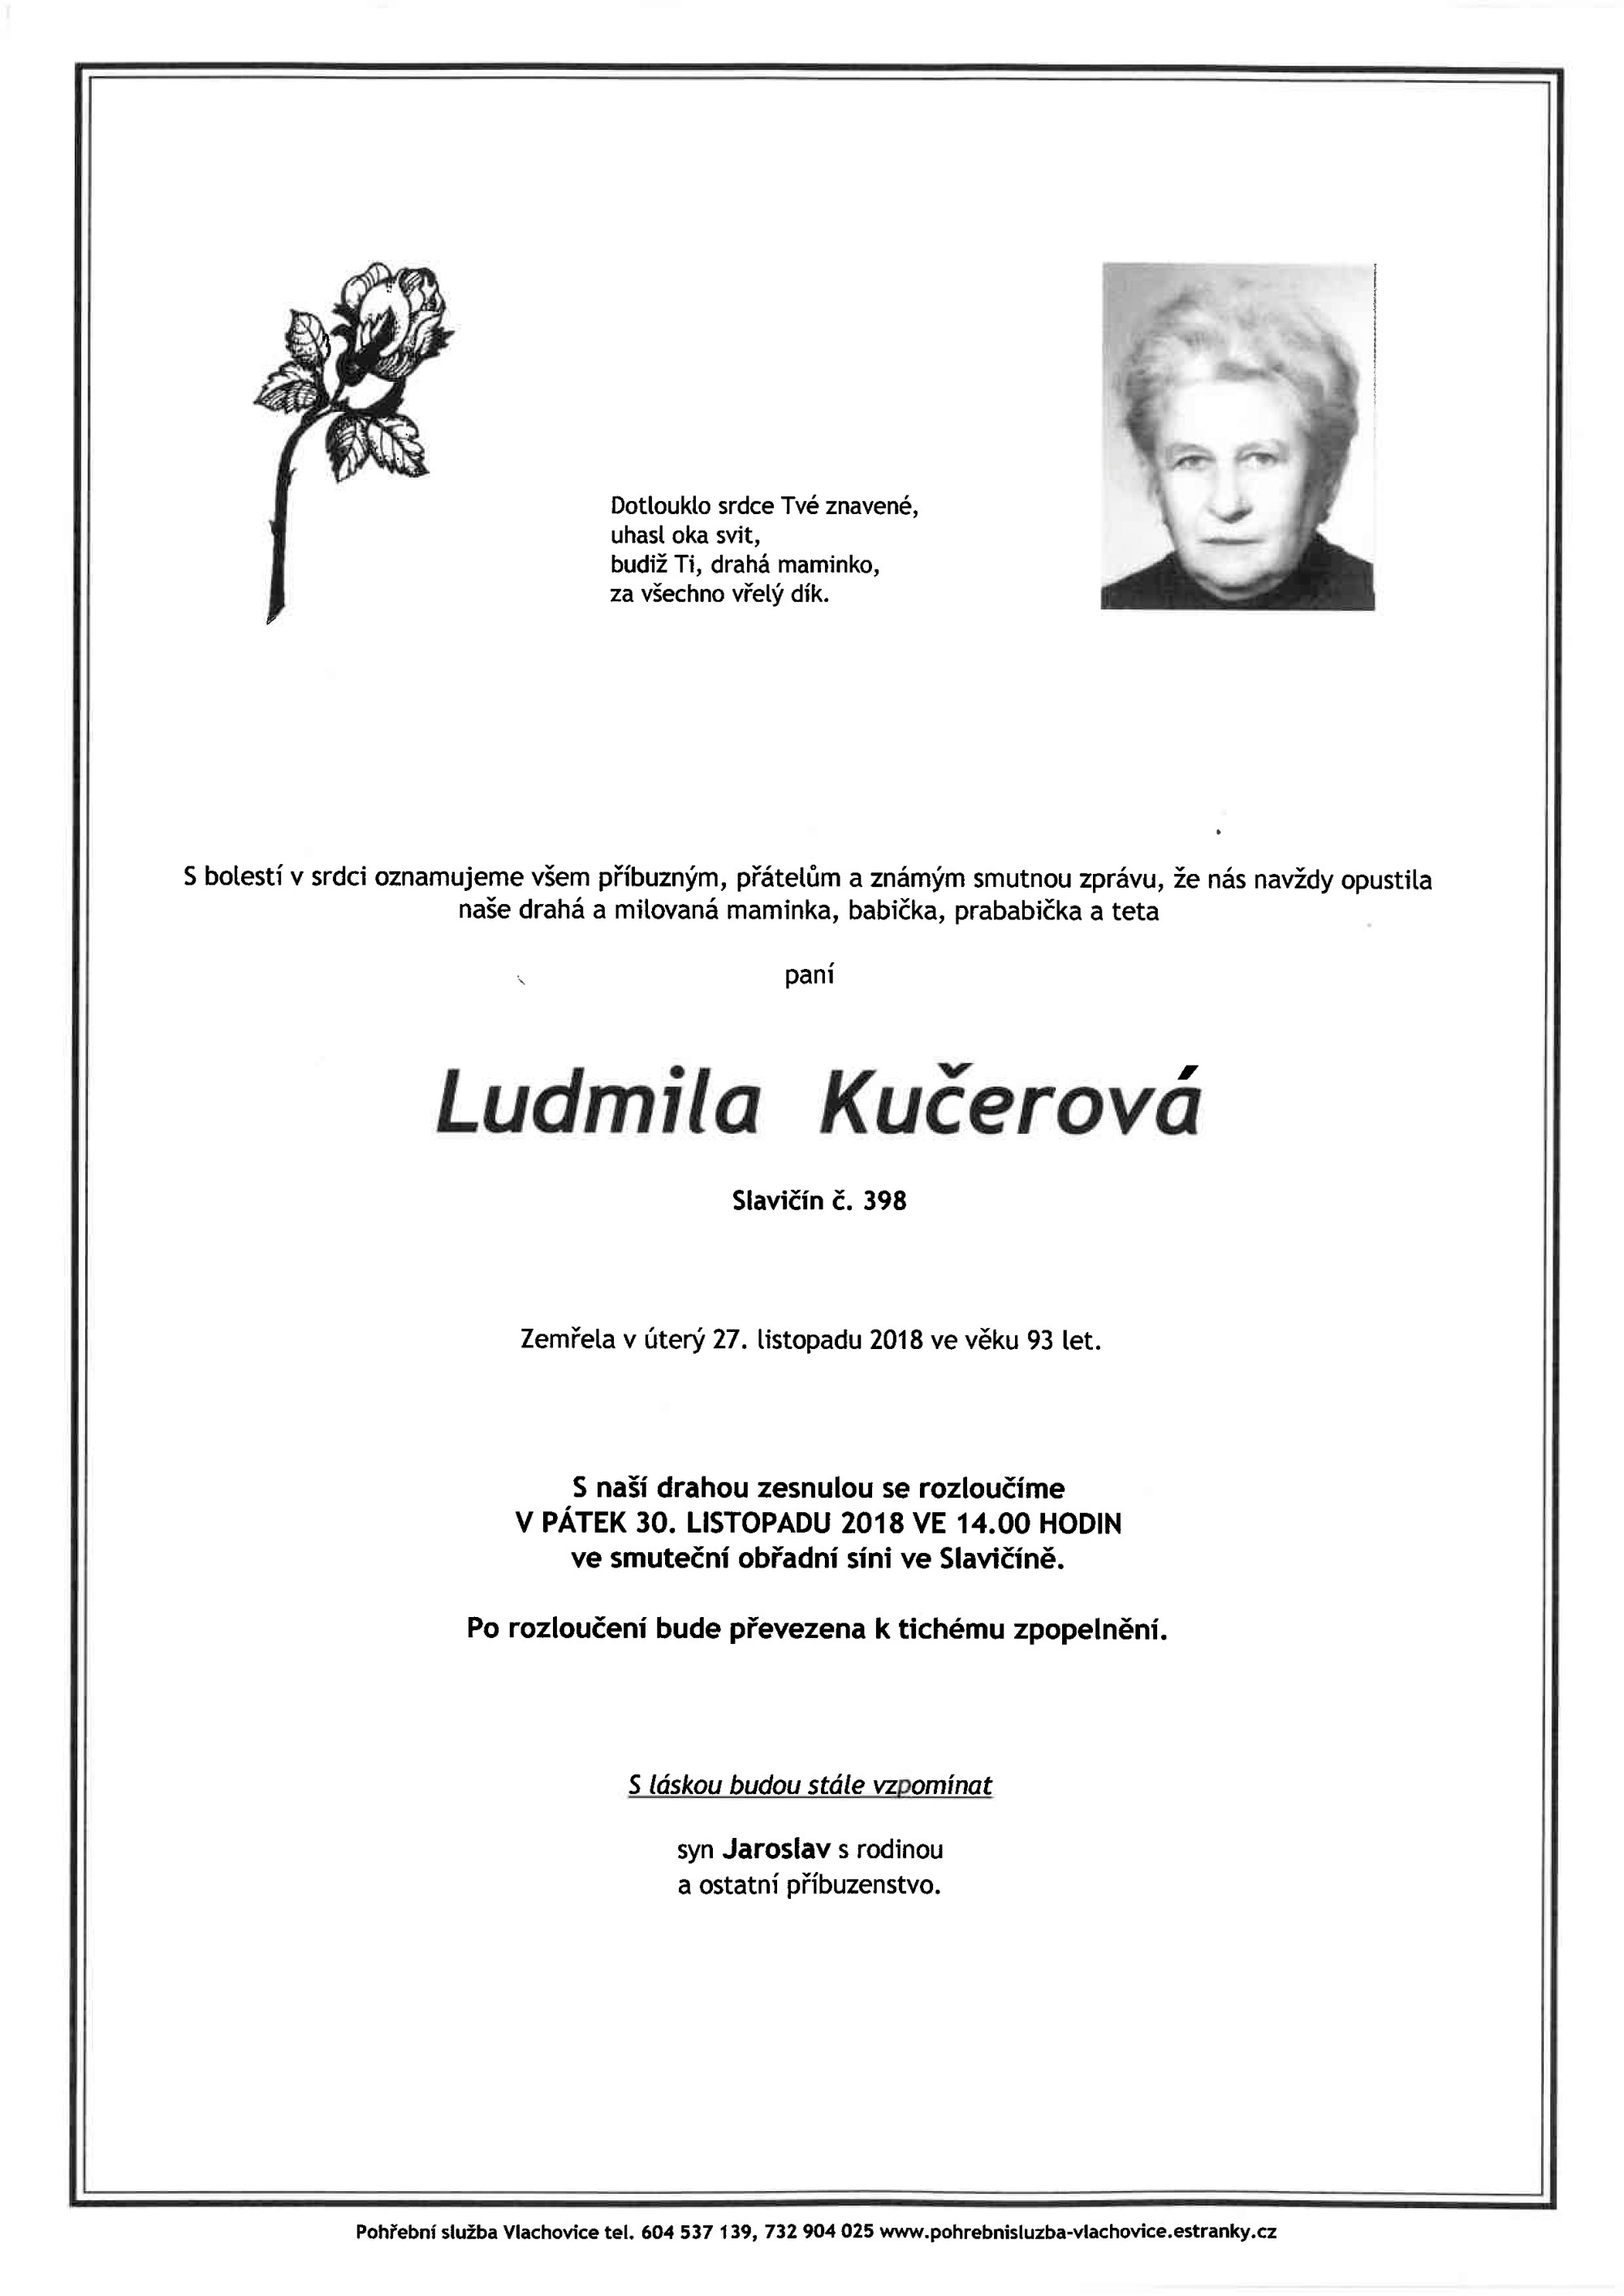 Ludmila Kučerová